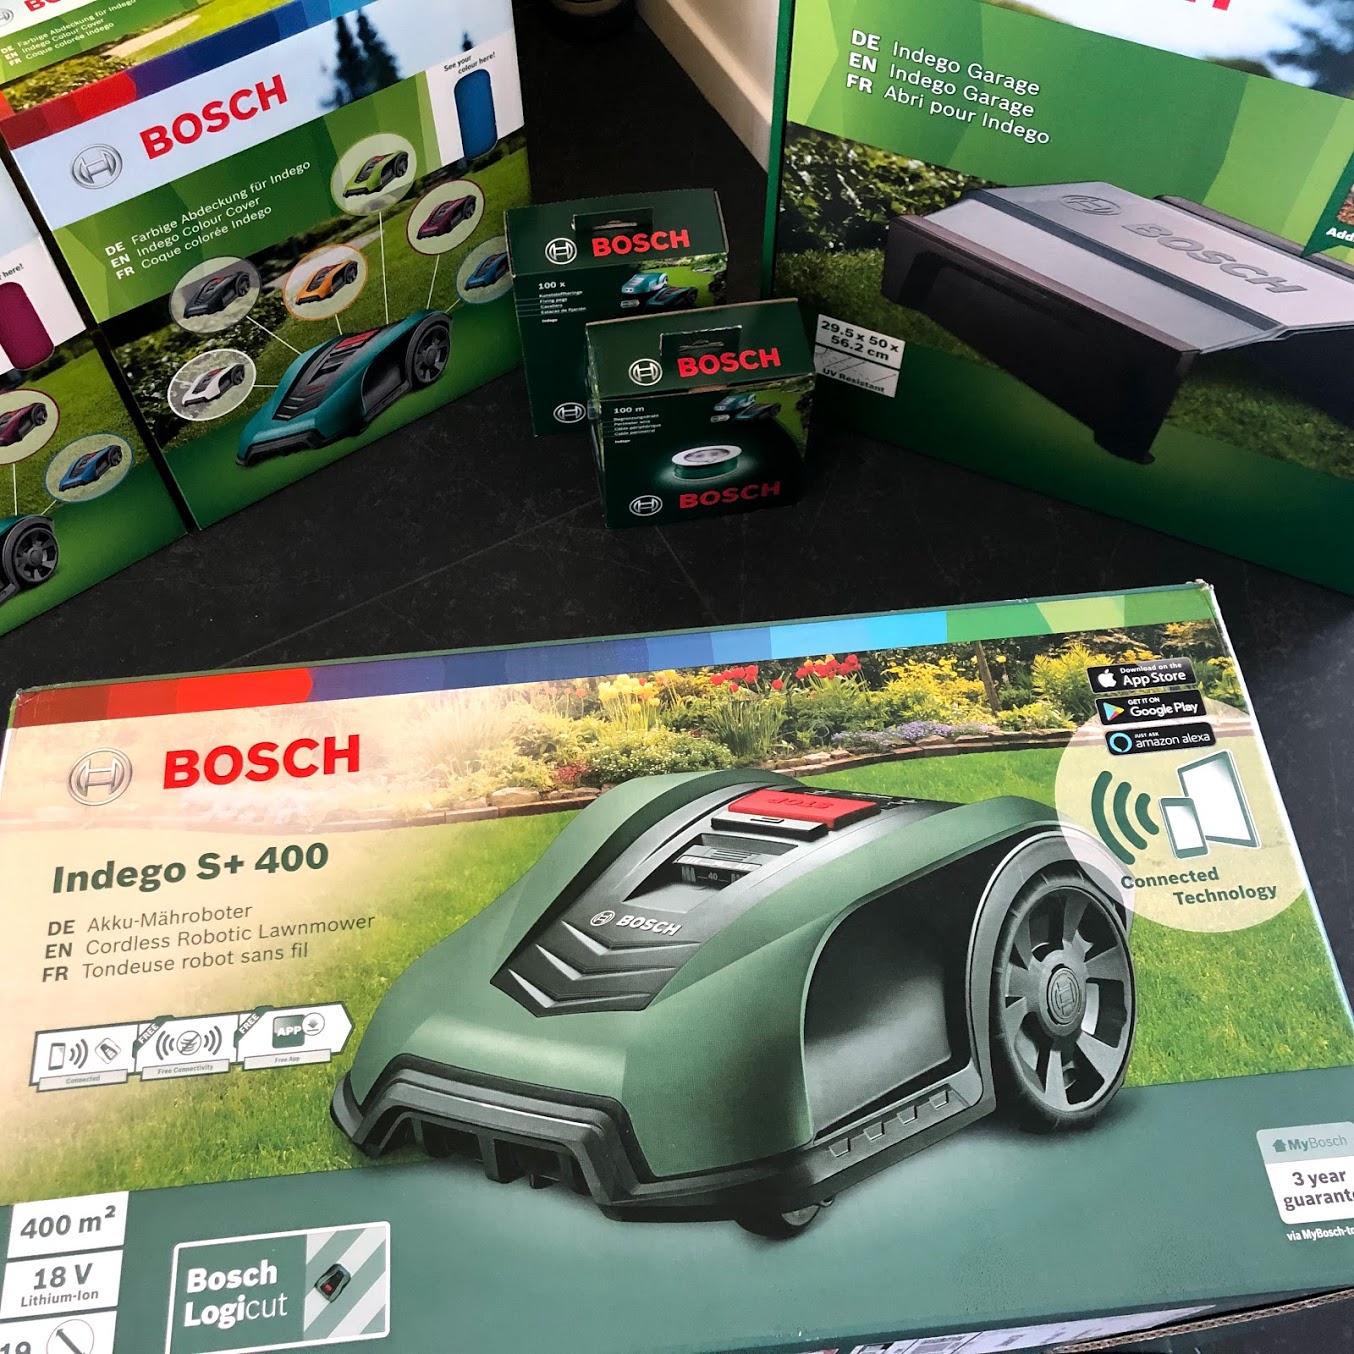 Test af Bosch Indego 400 connect s+ s+400 erfaring test anmeldelse review garage virker god robotplæneklipper støjniveau lydniveau